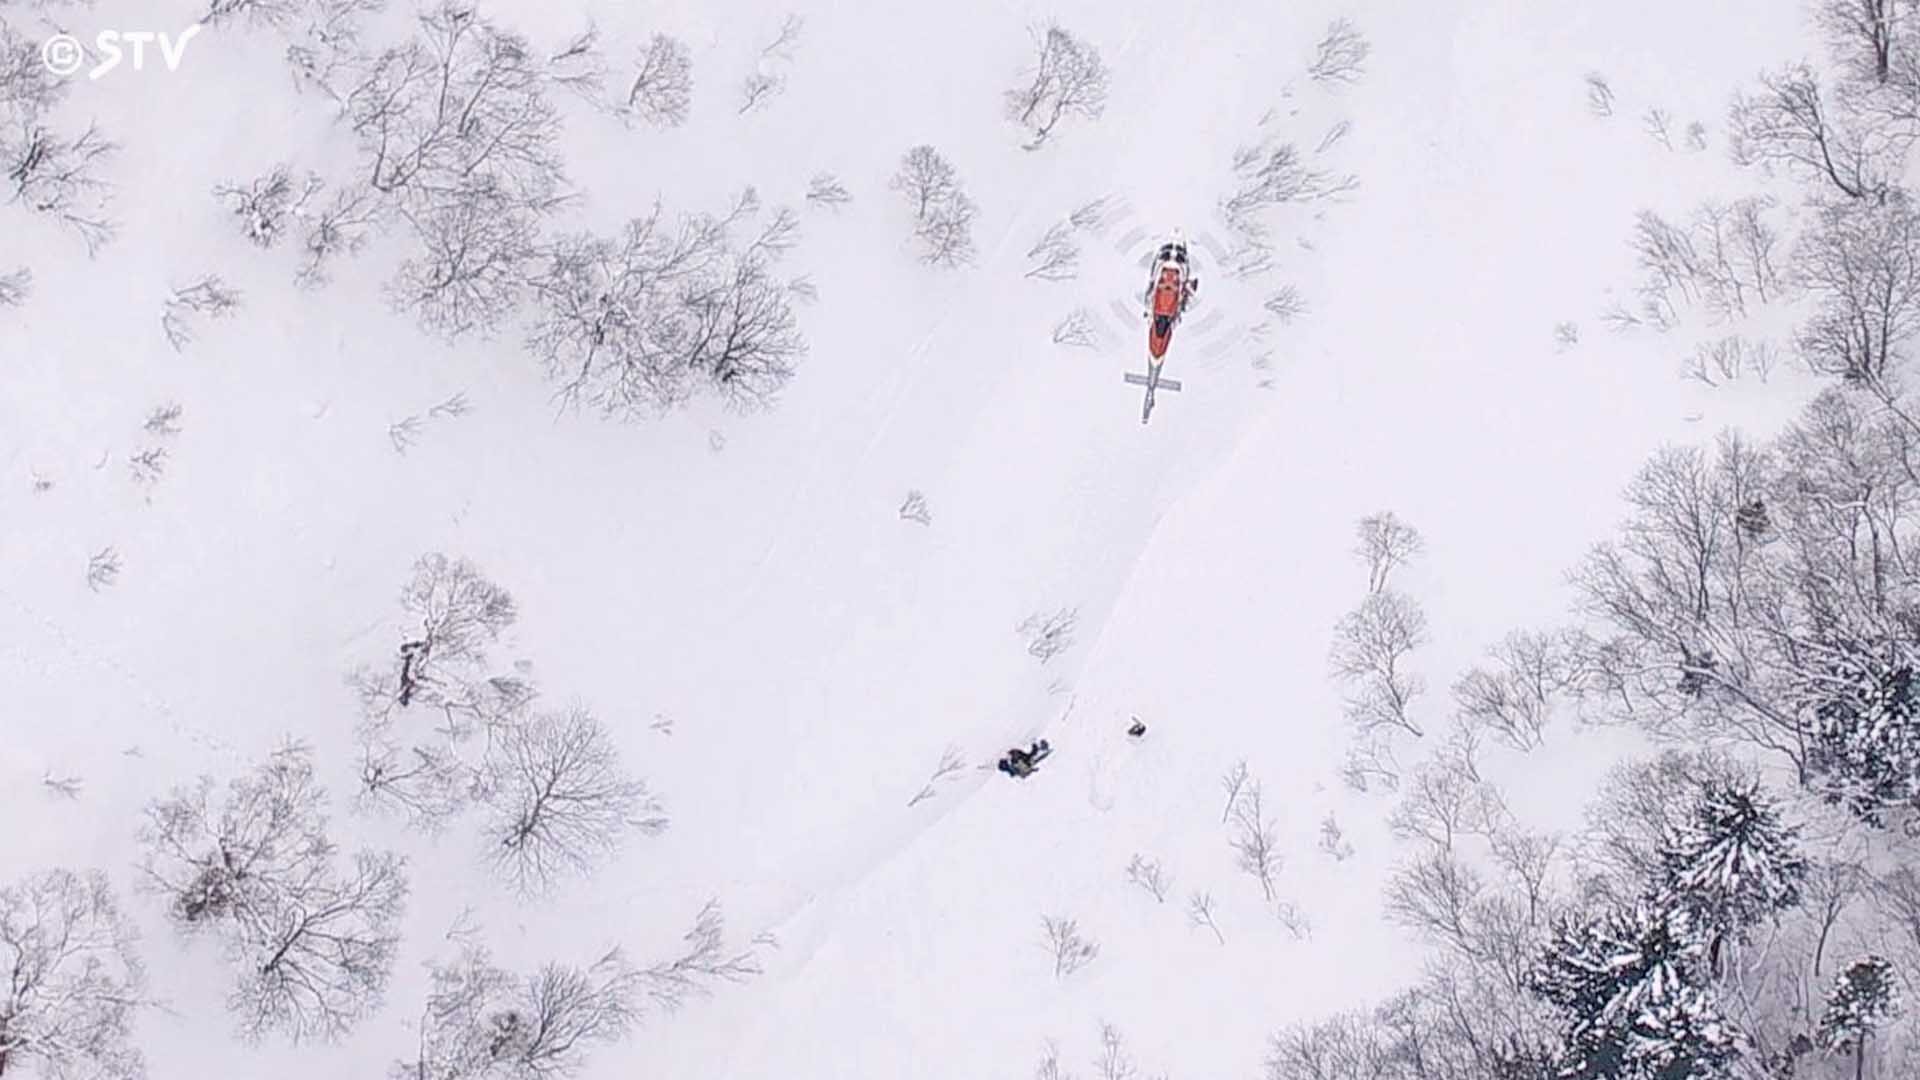 สลดนักท่องเที่ยวดับ 2 ศพ เซ่น “หิมะถล่ม” ขณะเล่นสกีบน “ภูเขาฟูจิแห่งฮอกไกโด”